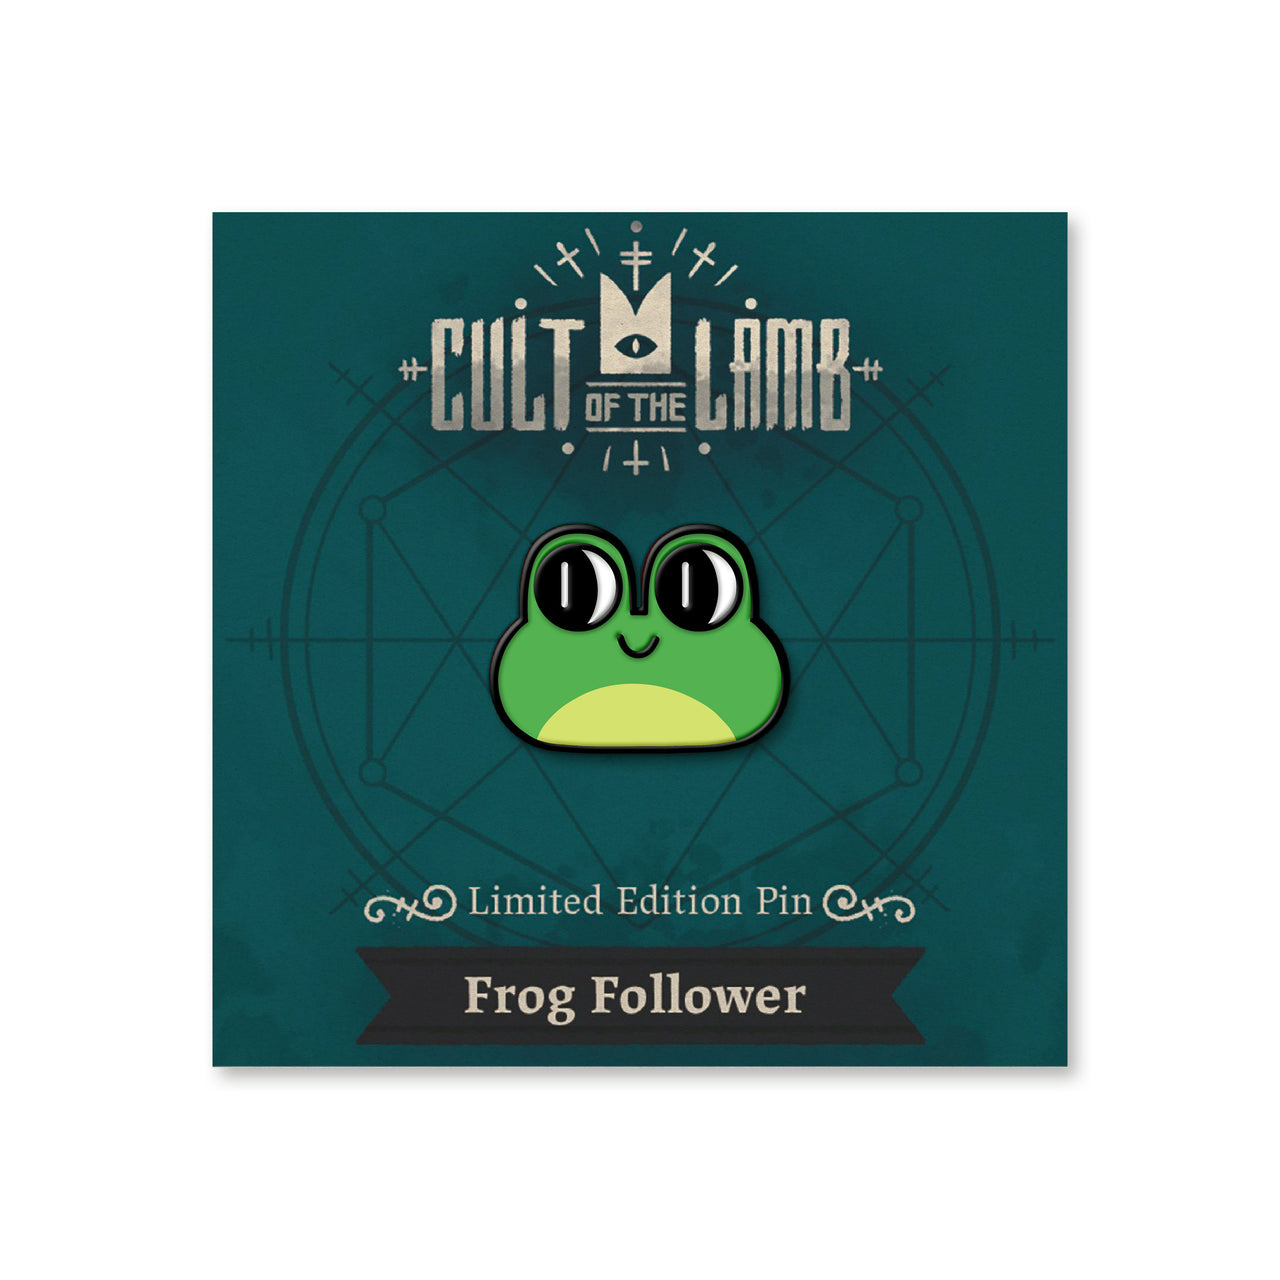 Cult of the Lamb Frog Follower Enamel Pin